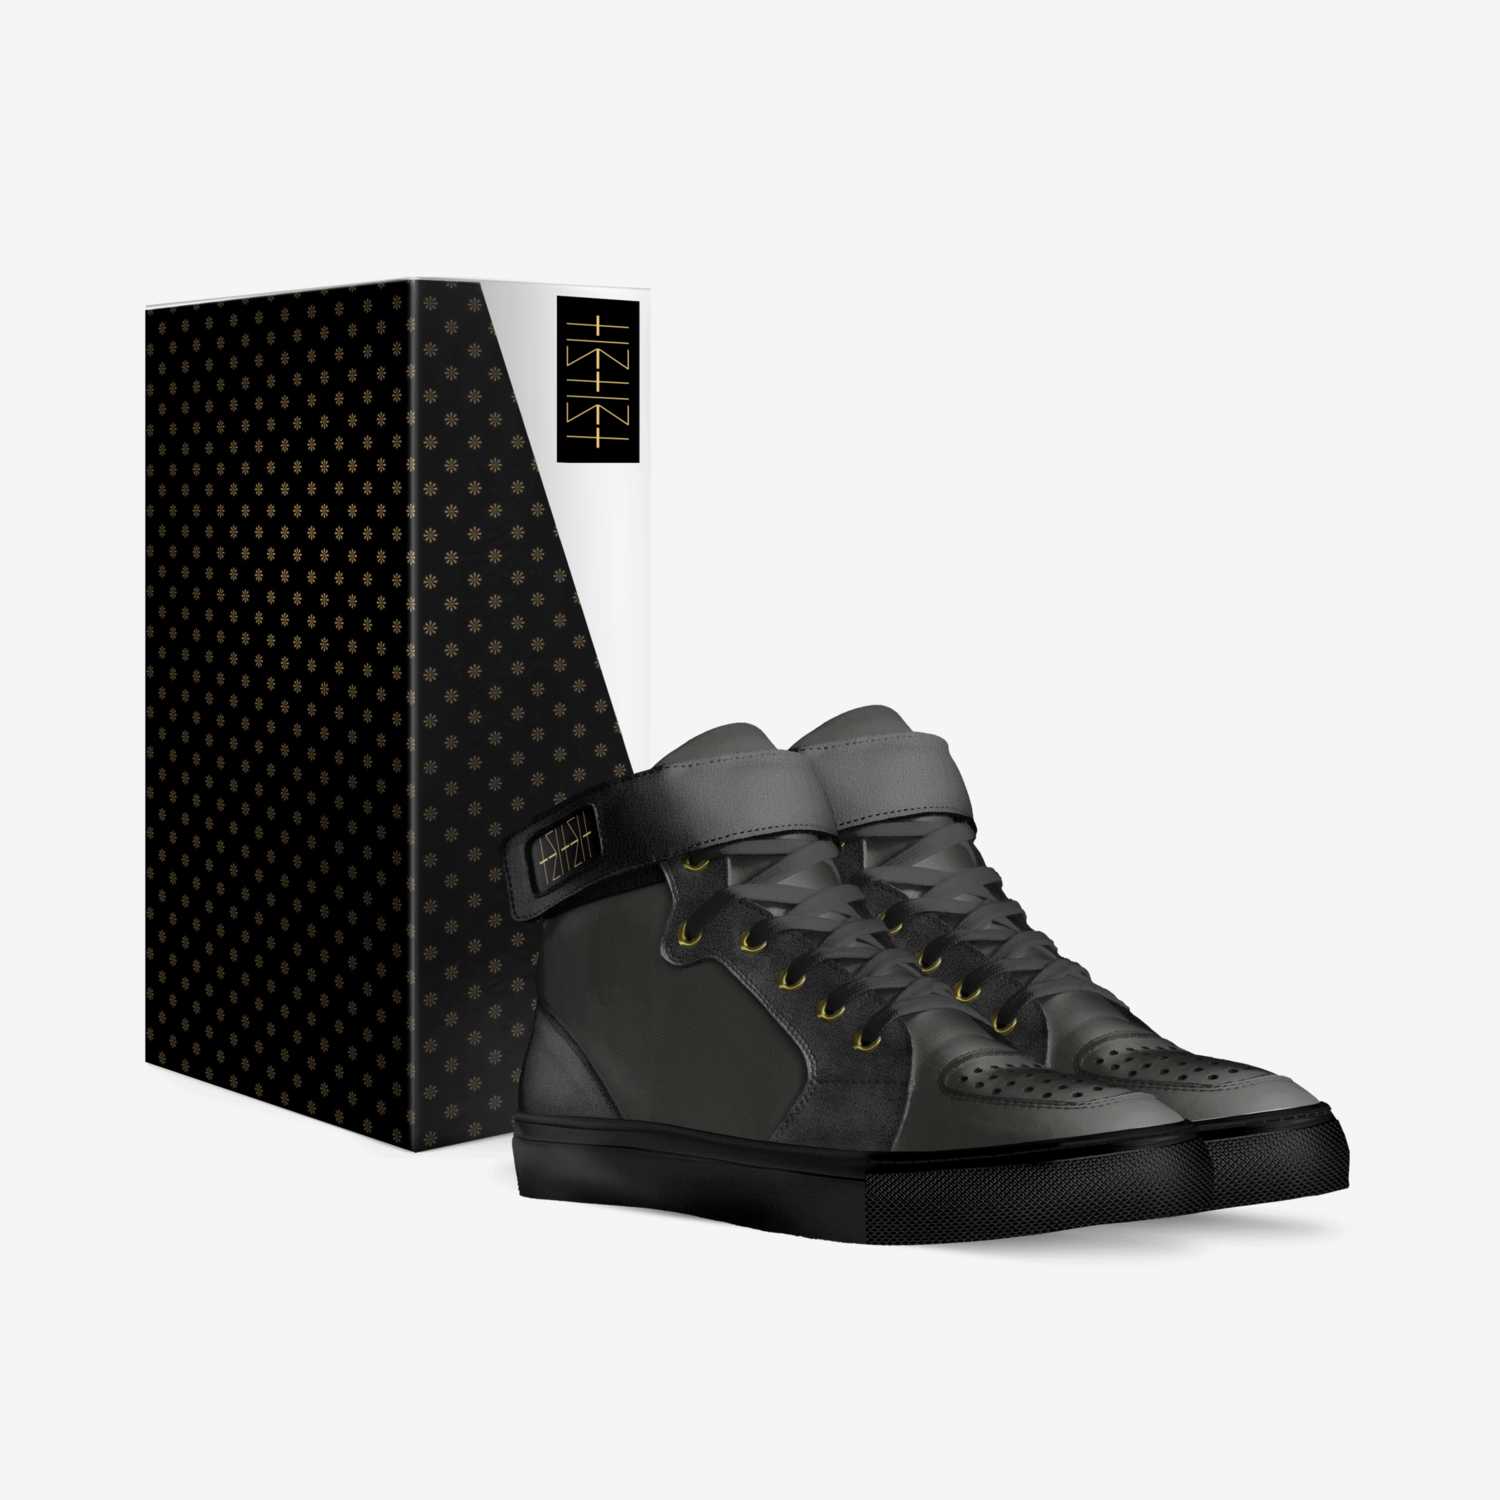 Yemenite custom made in Italy shoes by Ricardo Yoreh Ladino | Box view